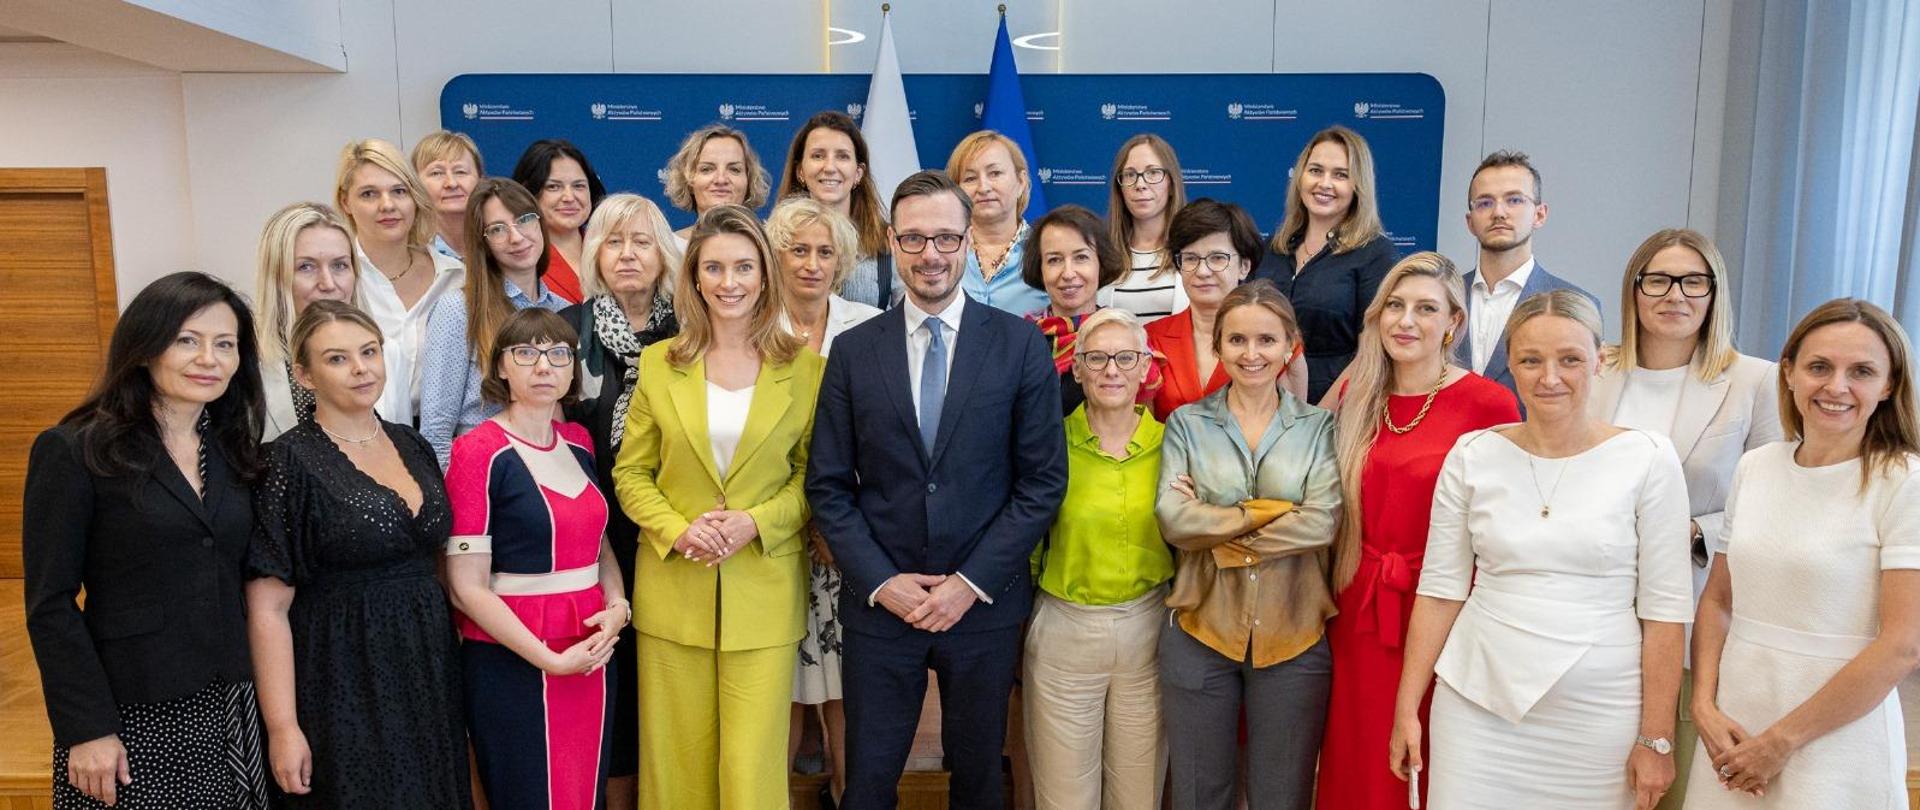 Spotkanie Ministra Jakuba Jaworowskiego z przedstawicielkami organizacji wspierających rozwój zawodowy kobiet. Family photo uczestników spotkania. 